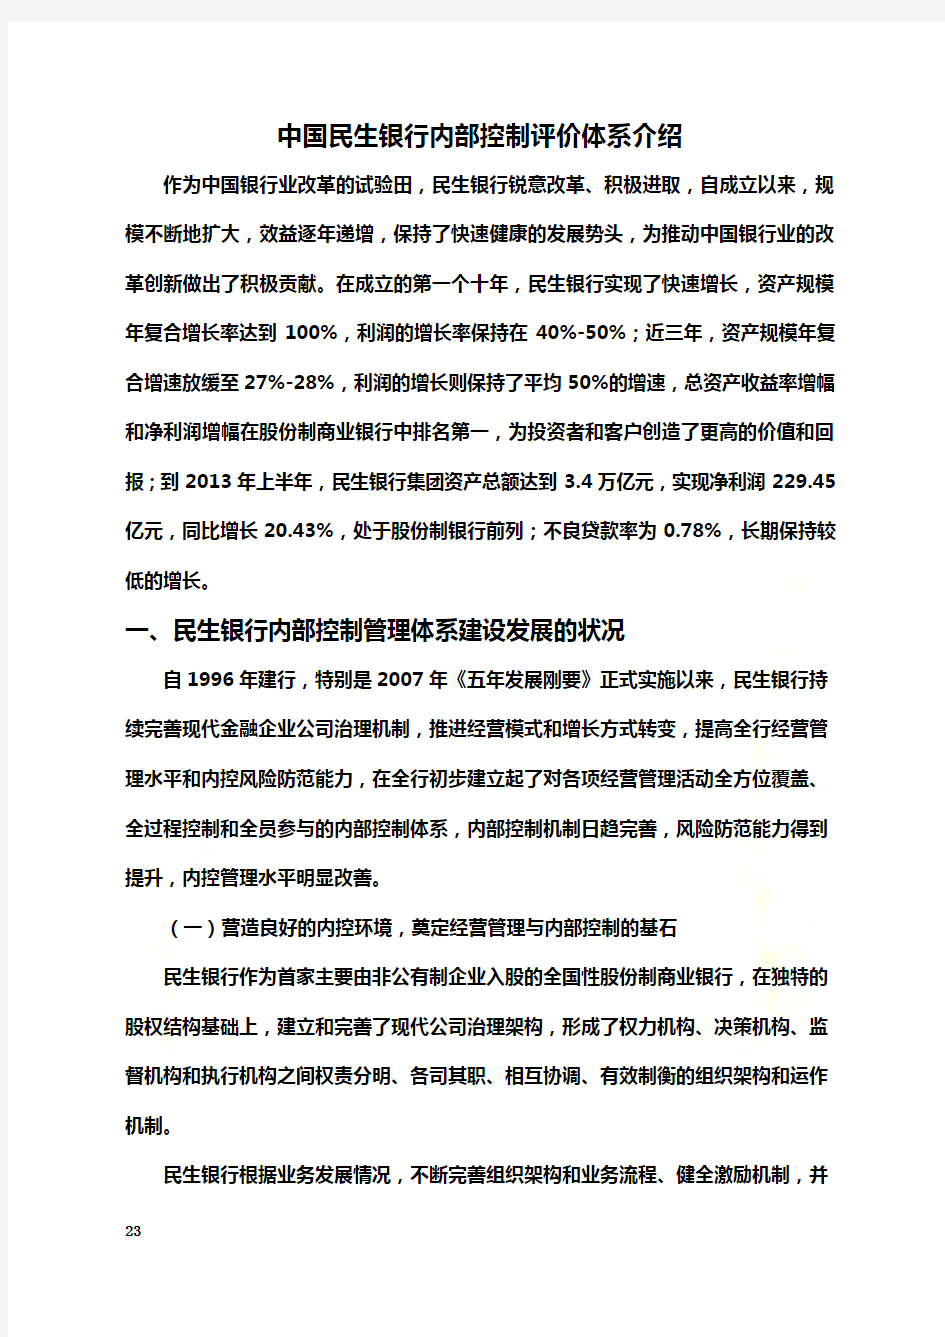 中国民生银行内部控制评价体系介绍(doc 23页)